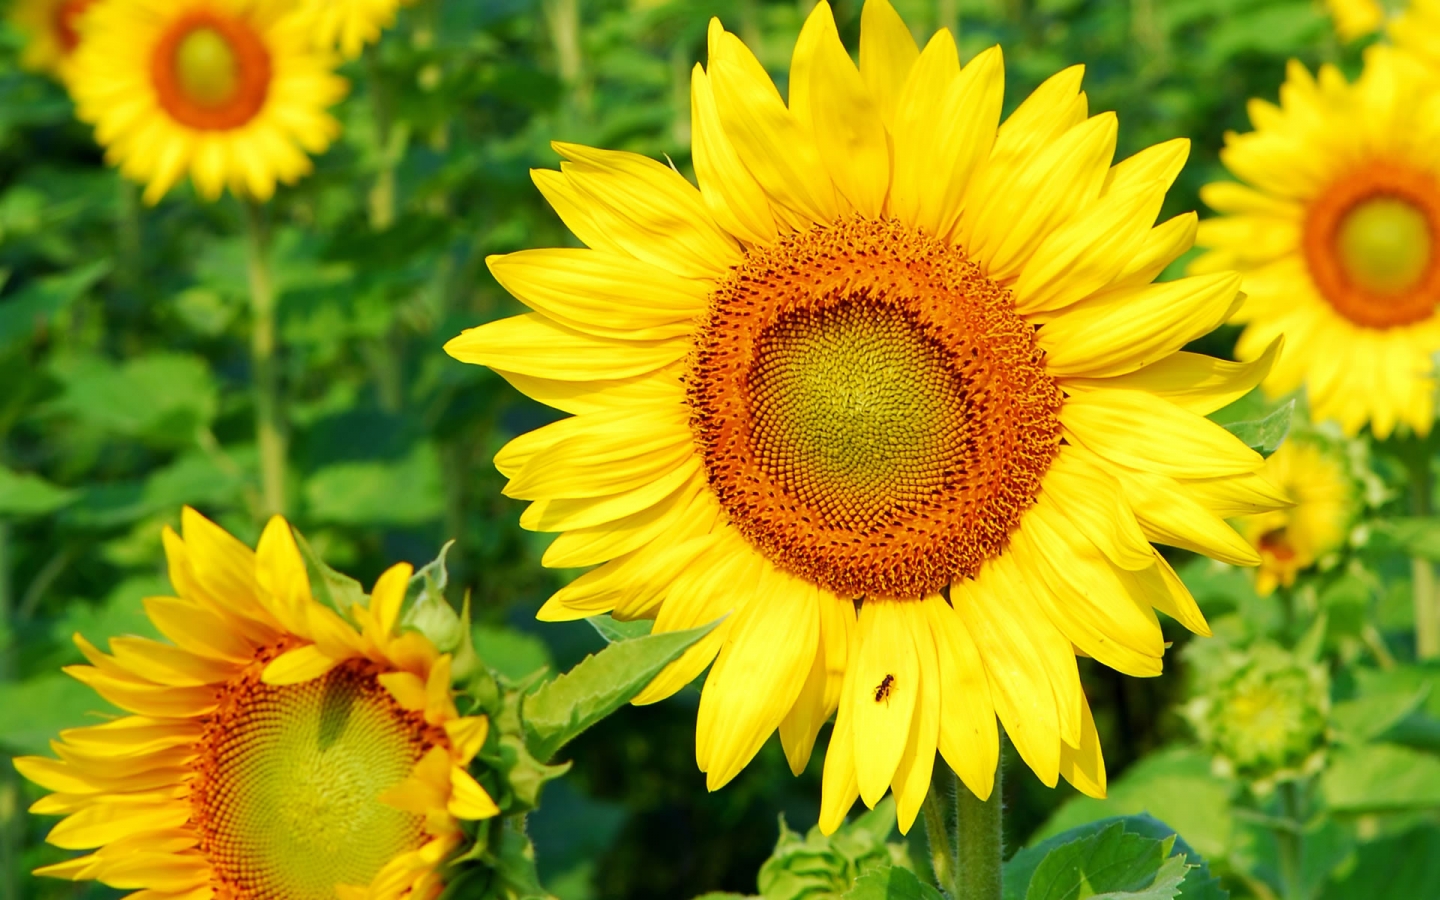 Superb Sunflower for 1440 x 900 widescreen resolution